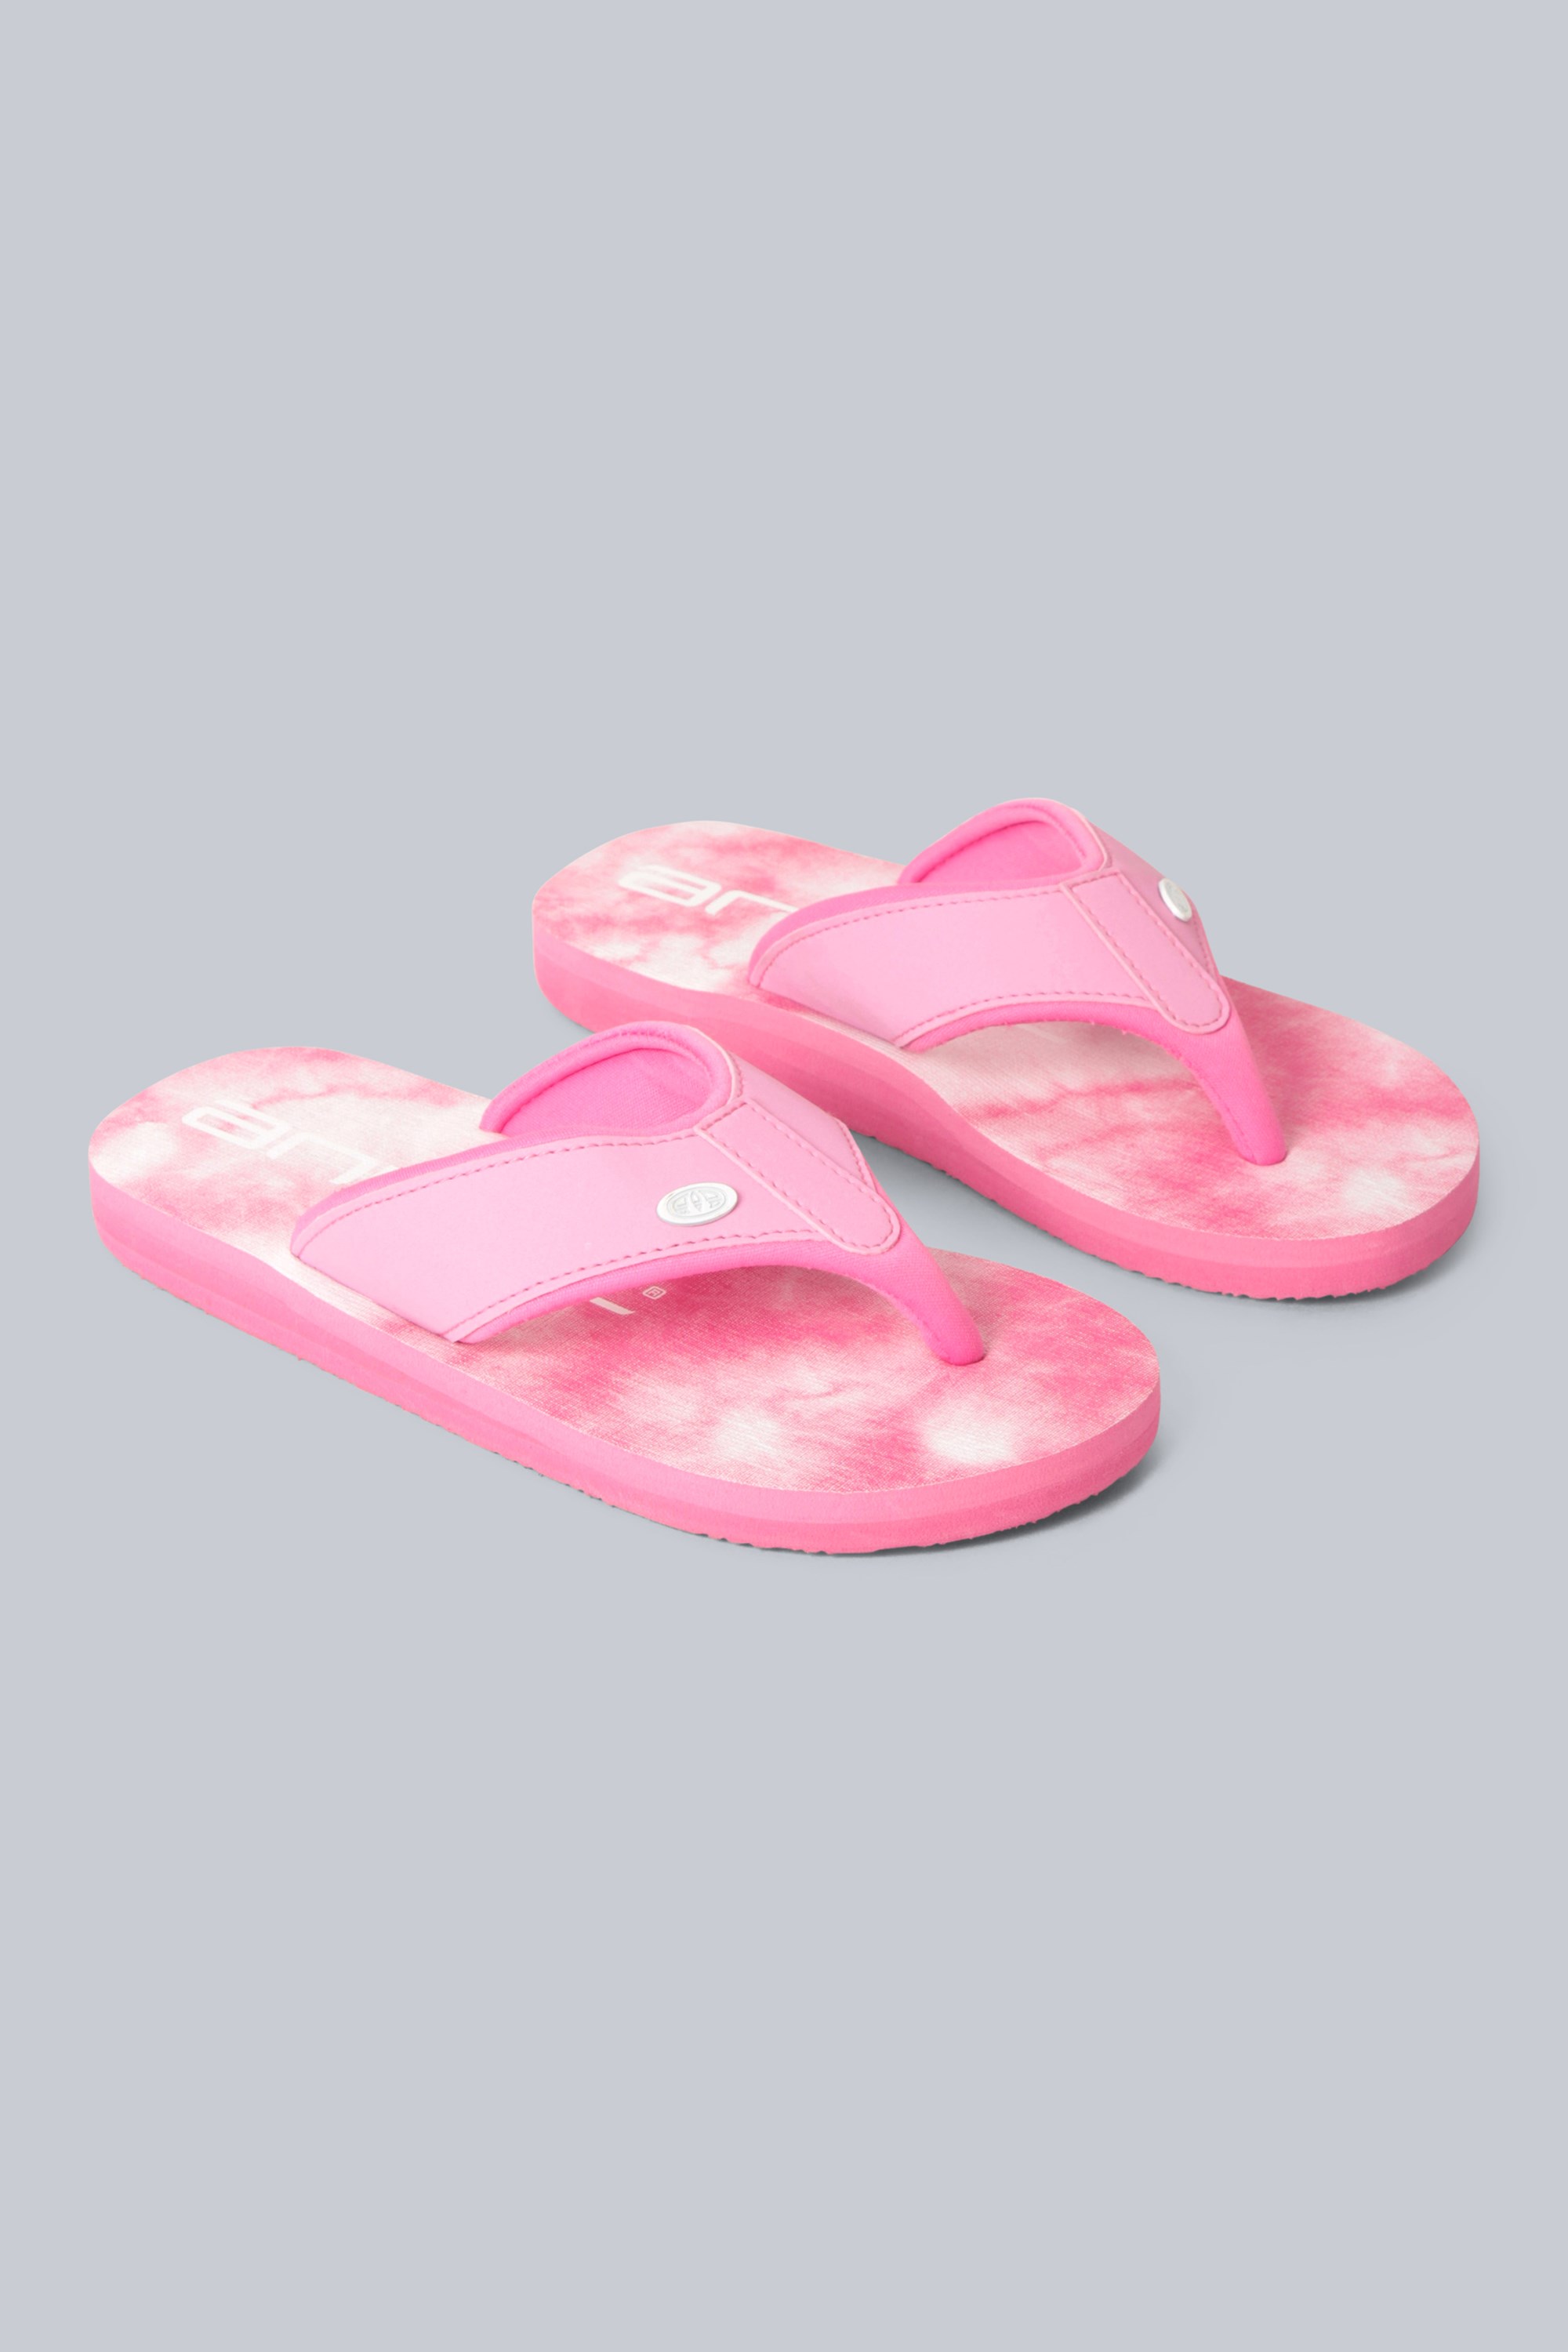 Animal Swish Kinder Flip-Flops - Dunkel-Pink